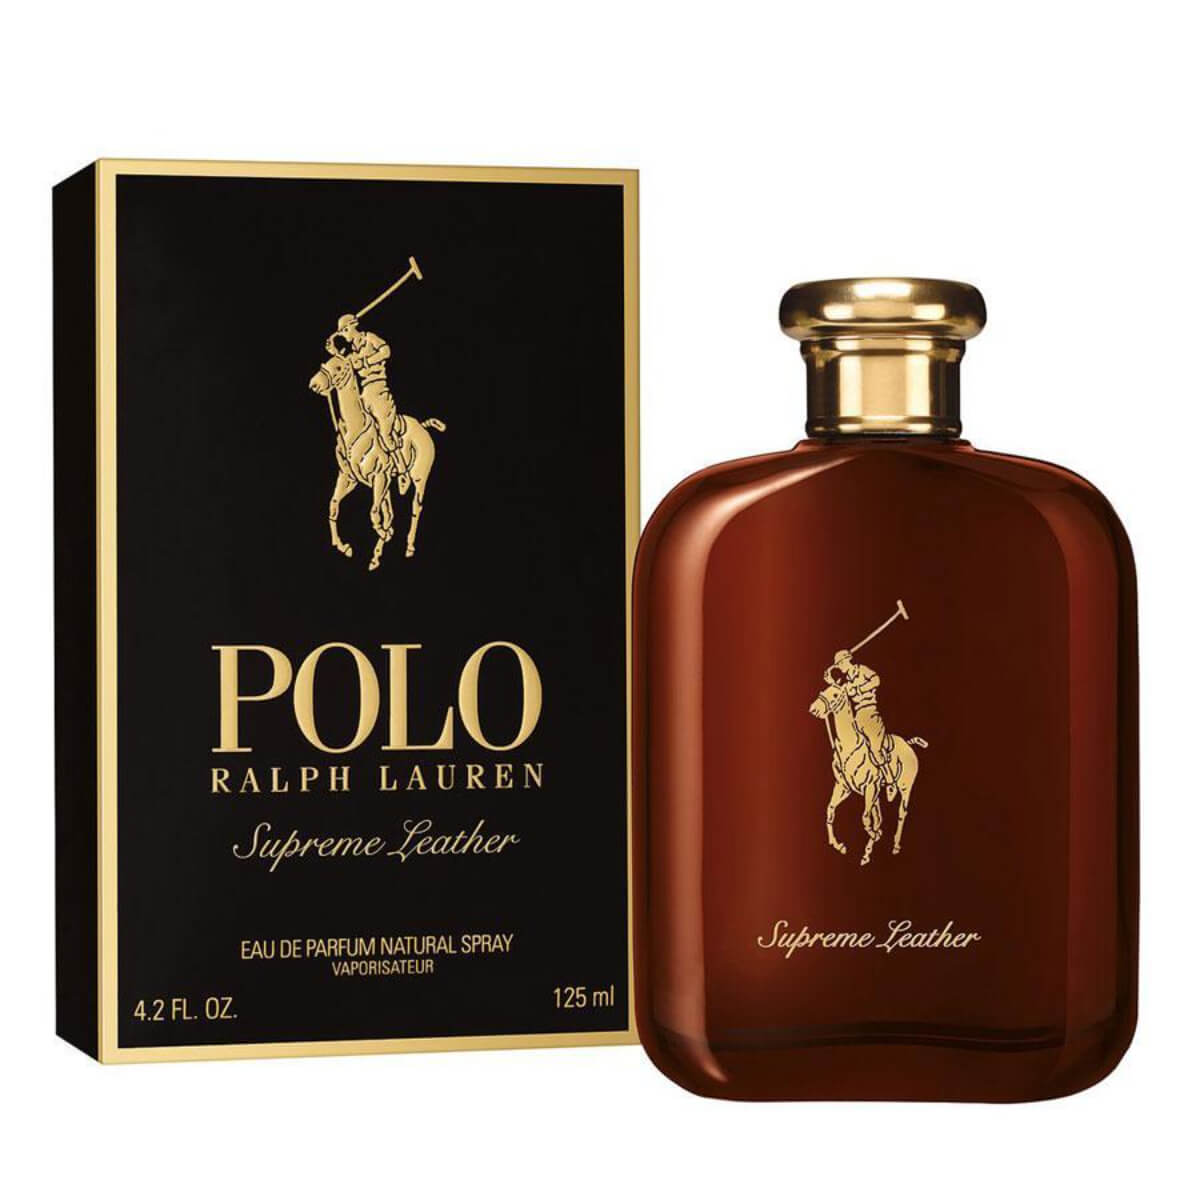 Polo Ralph Lauren Perfume for Men